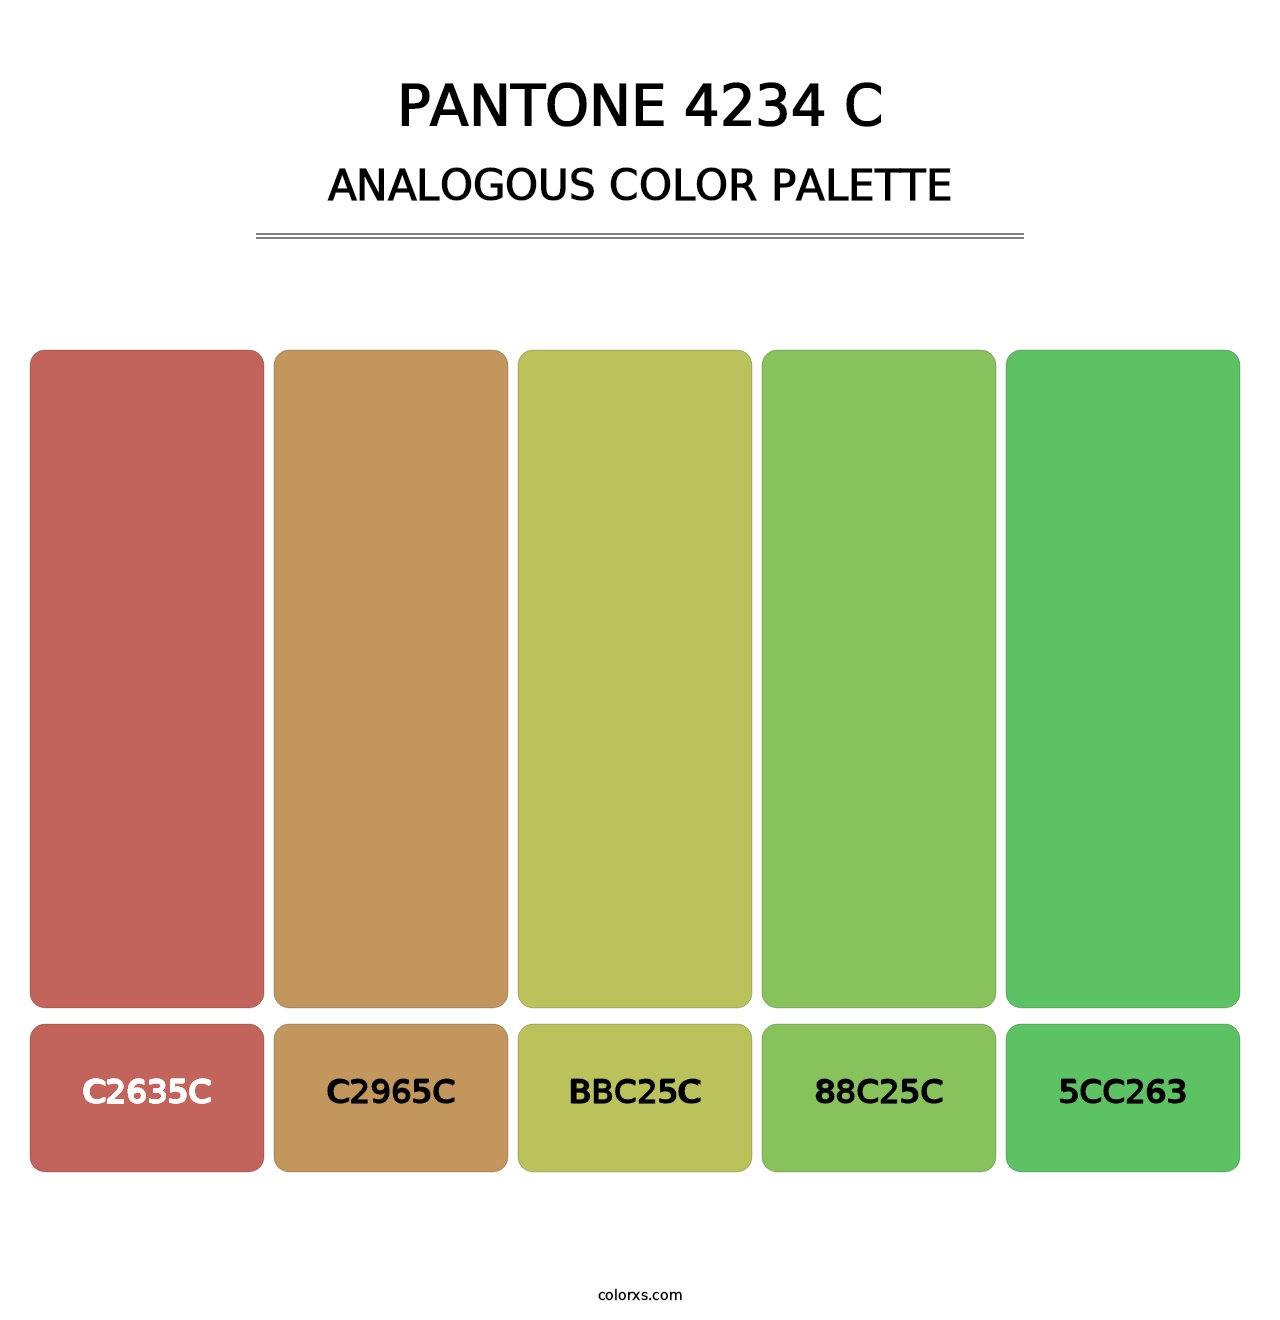 PANTONE 4234 C - Analogous Color Palette